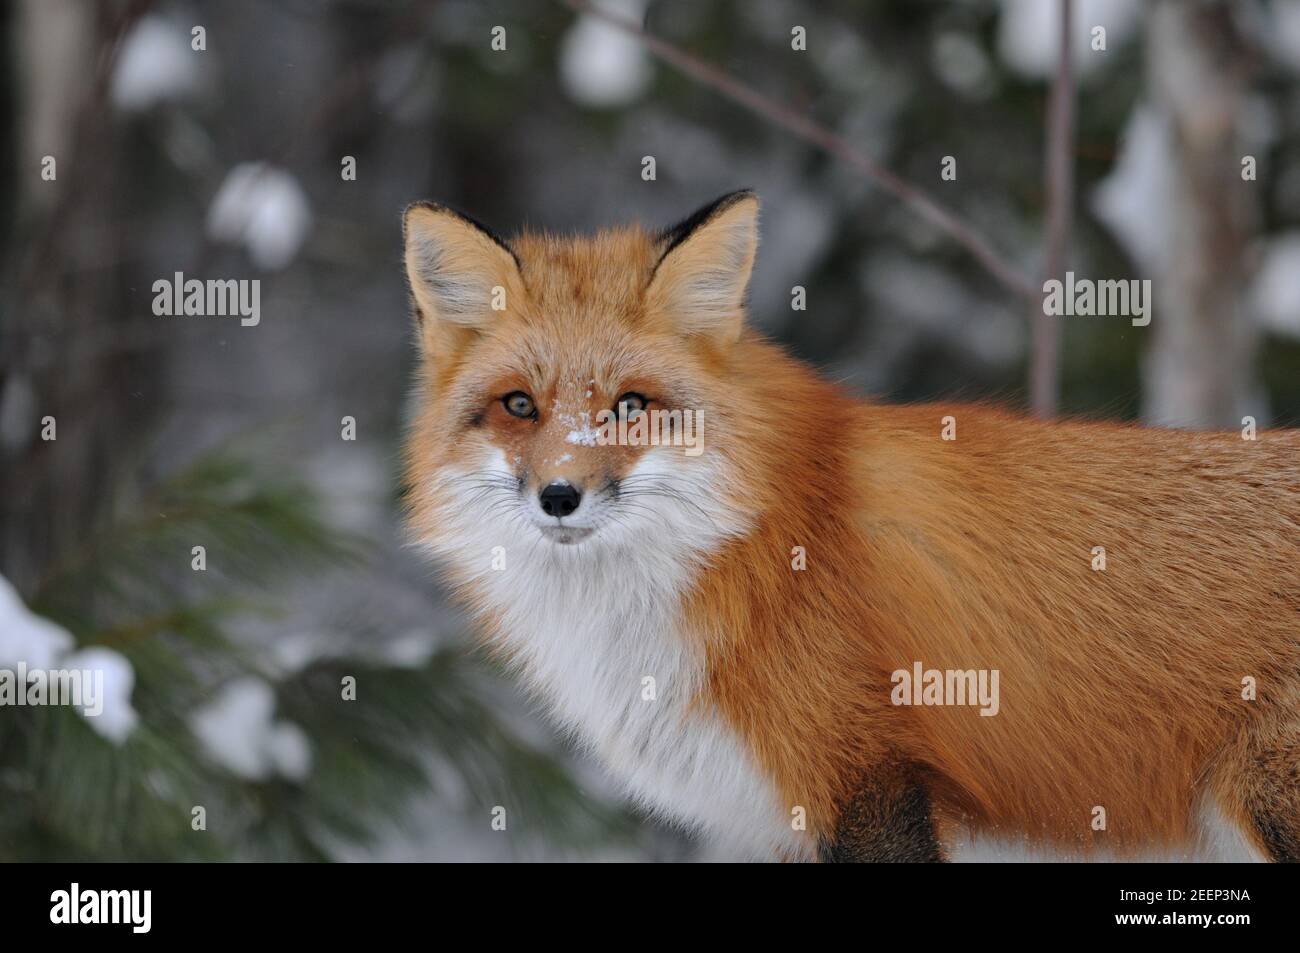 Foto in volpe rossa guardando la fotocamera nella stagione invernale nel suo ambiente e habitat con sfondo sfocato. Colpo di testa. Immagine FOX. Immagine. Verticale. Foto Stock